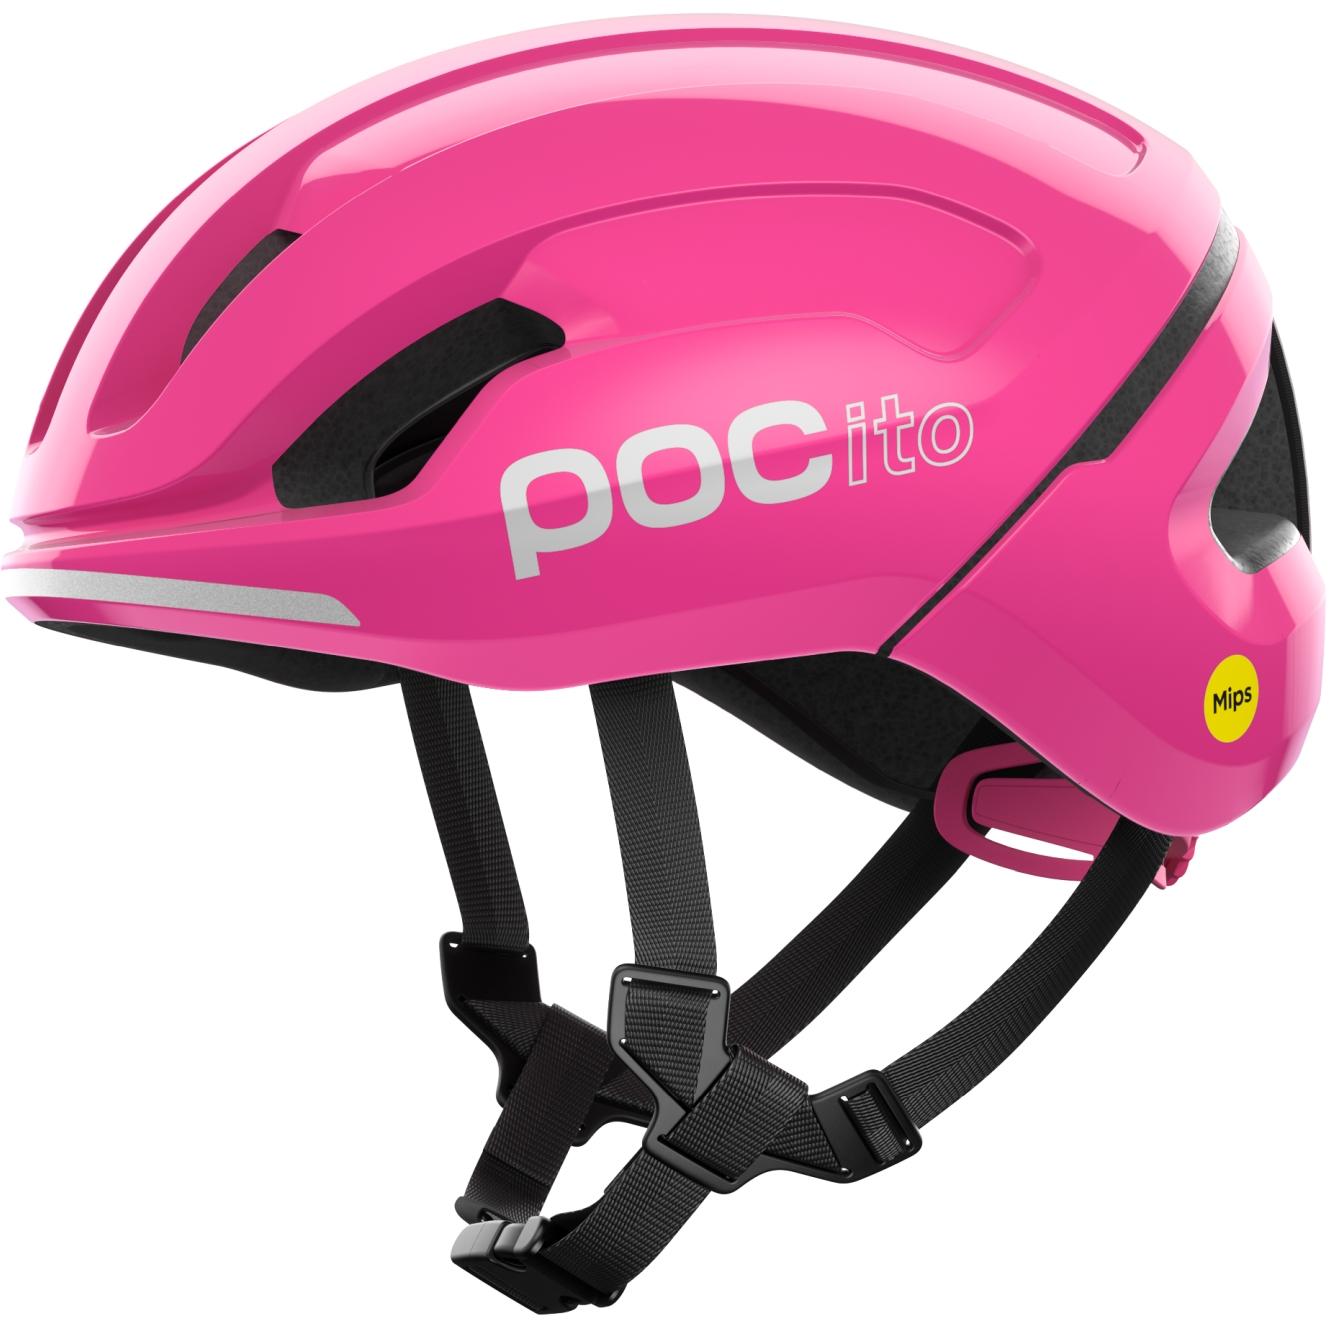 Produktbild von POC Pocito Omne MIPS Kinderhelm - 9085 fluorescent pink